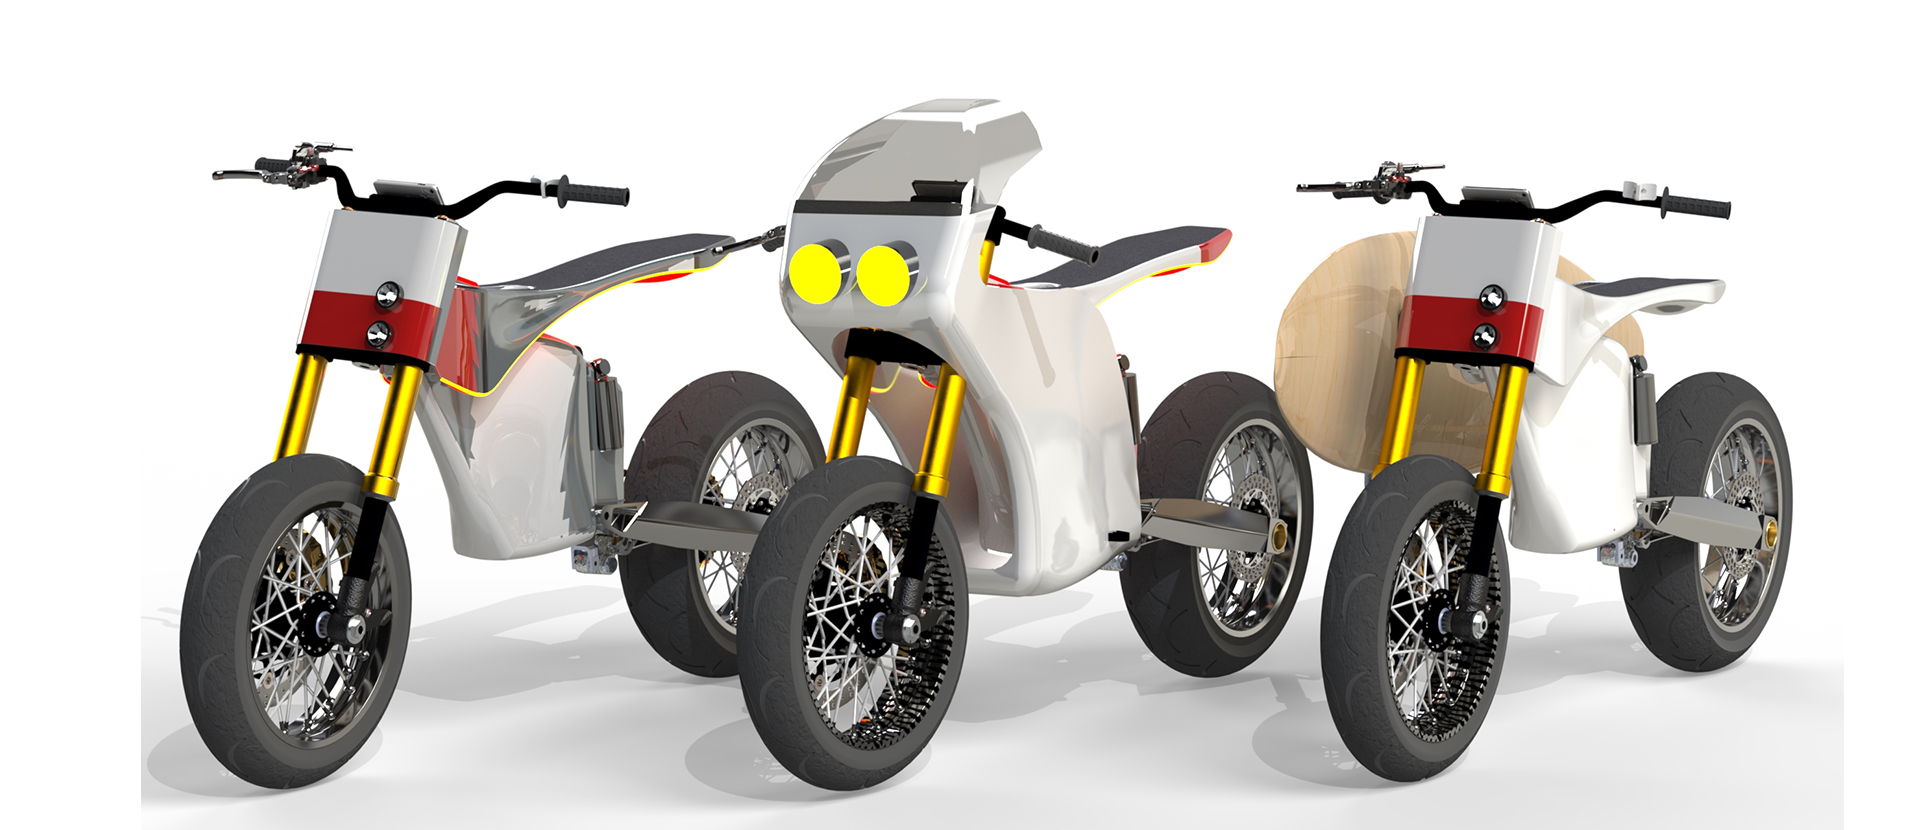 Ben Lee's electric motorbike rendering